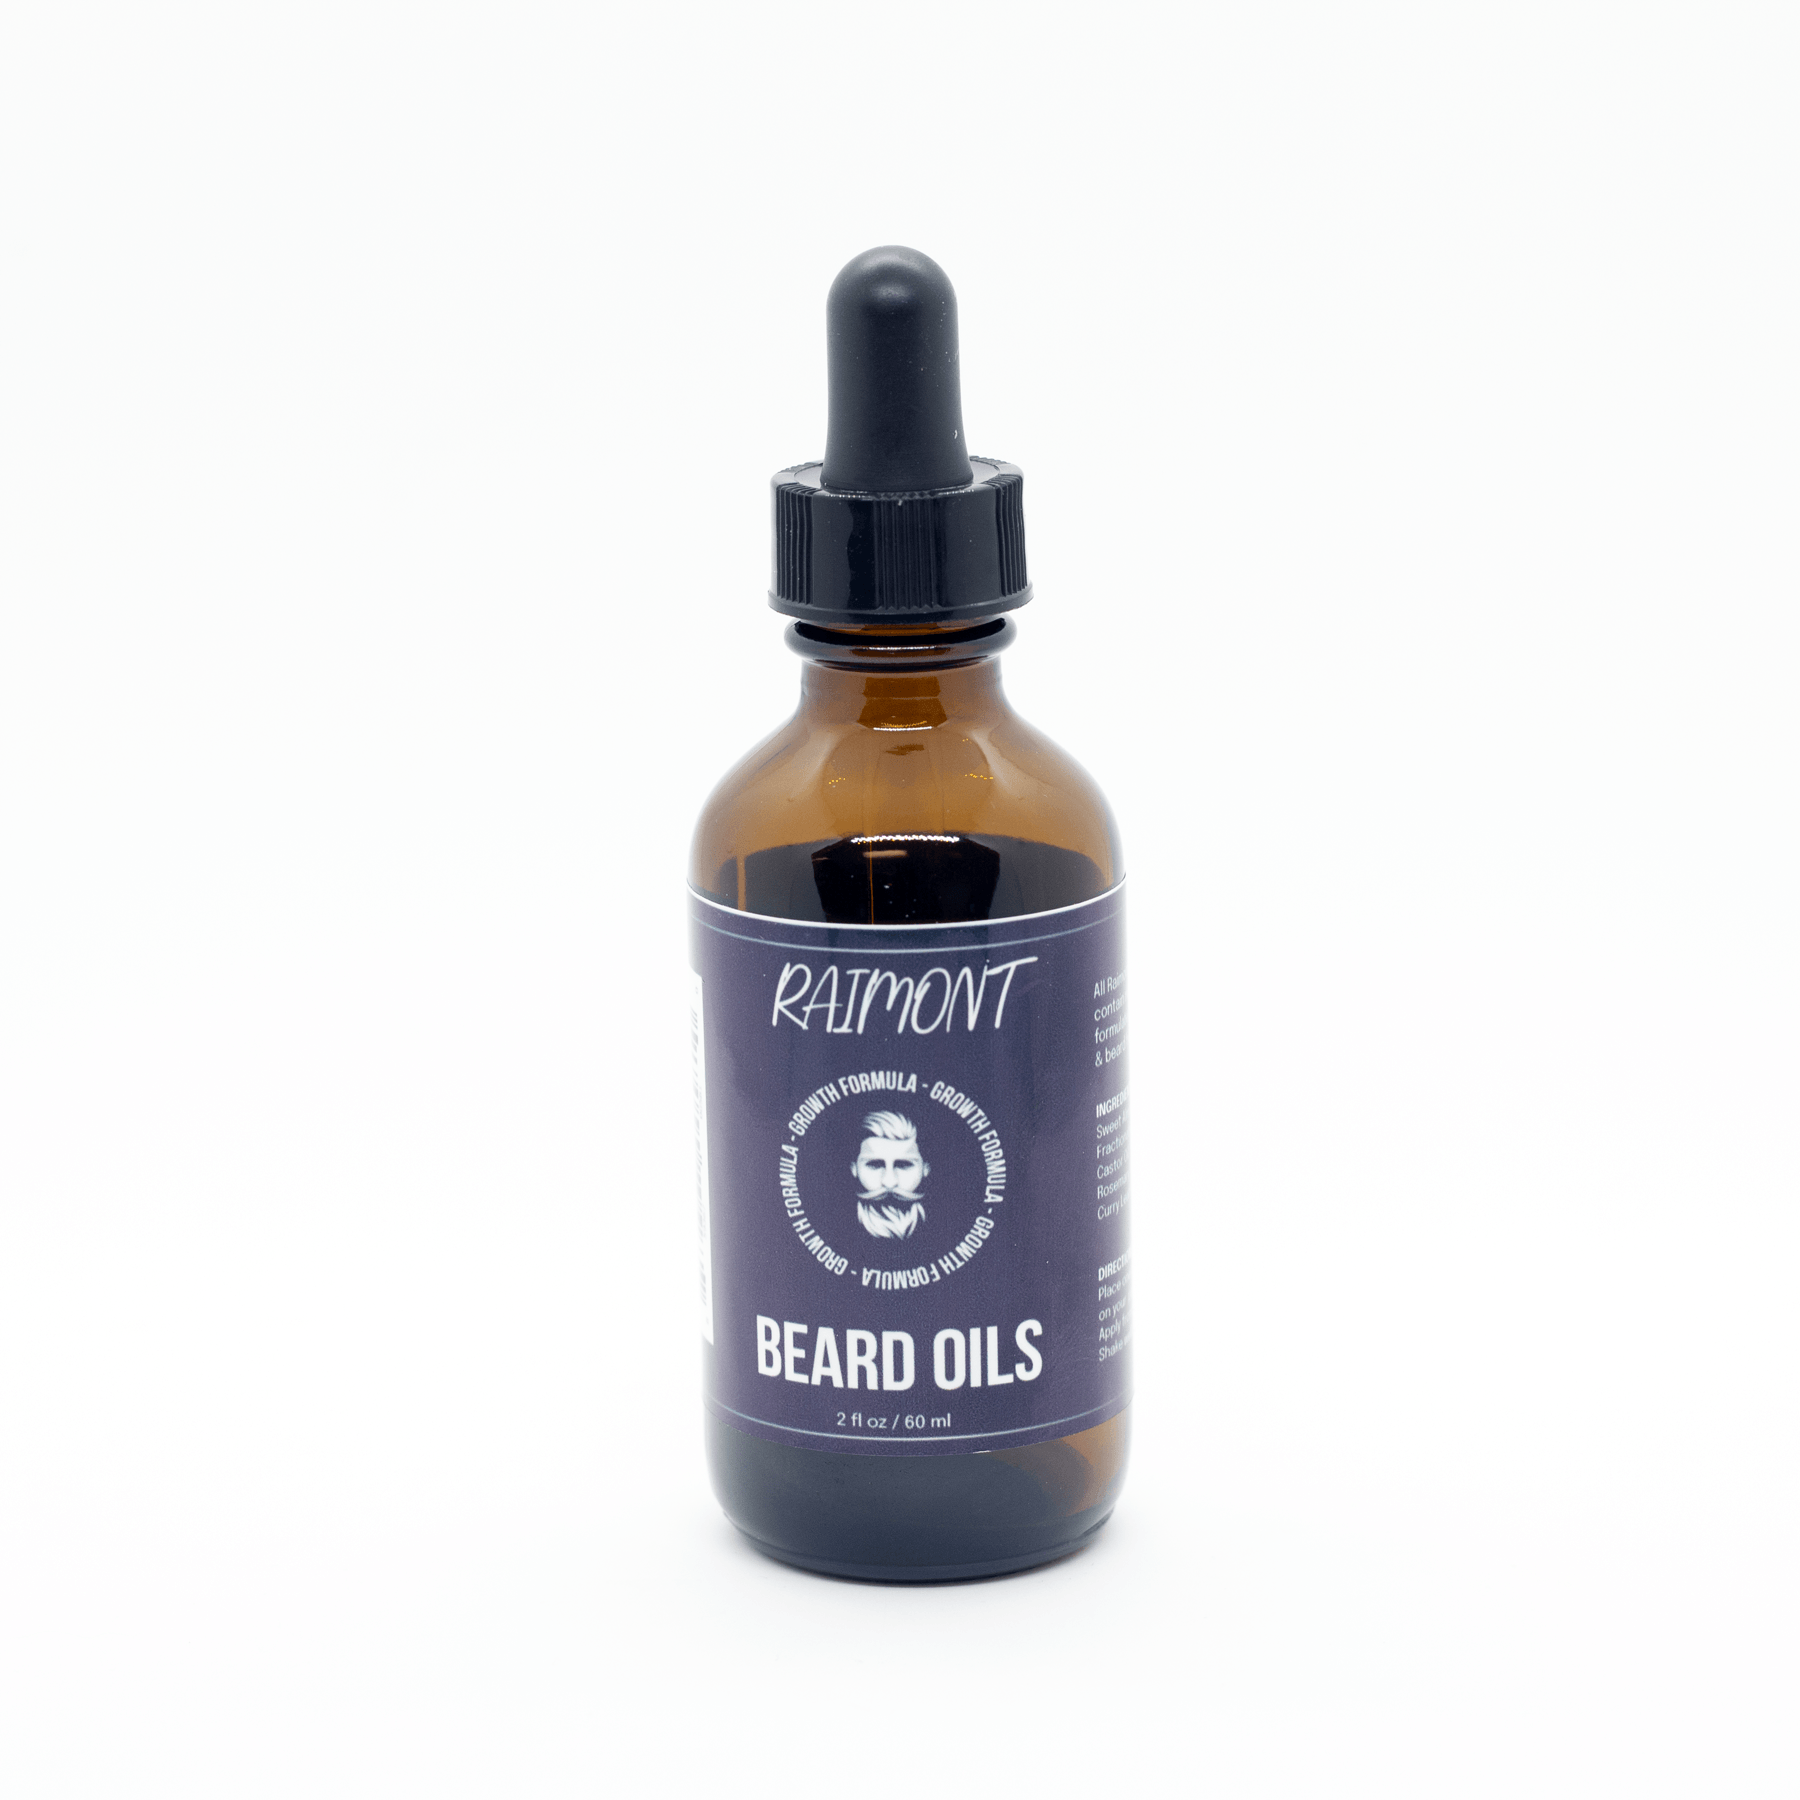 Health and Growth Beard Oil